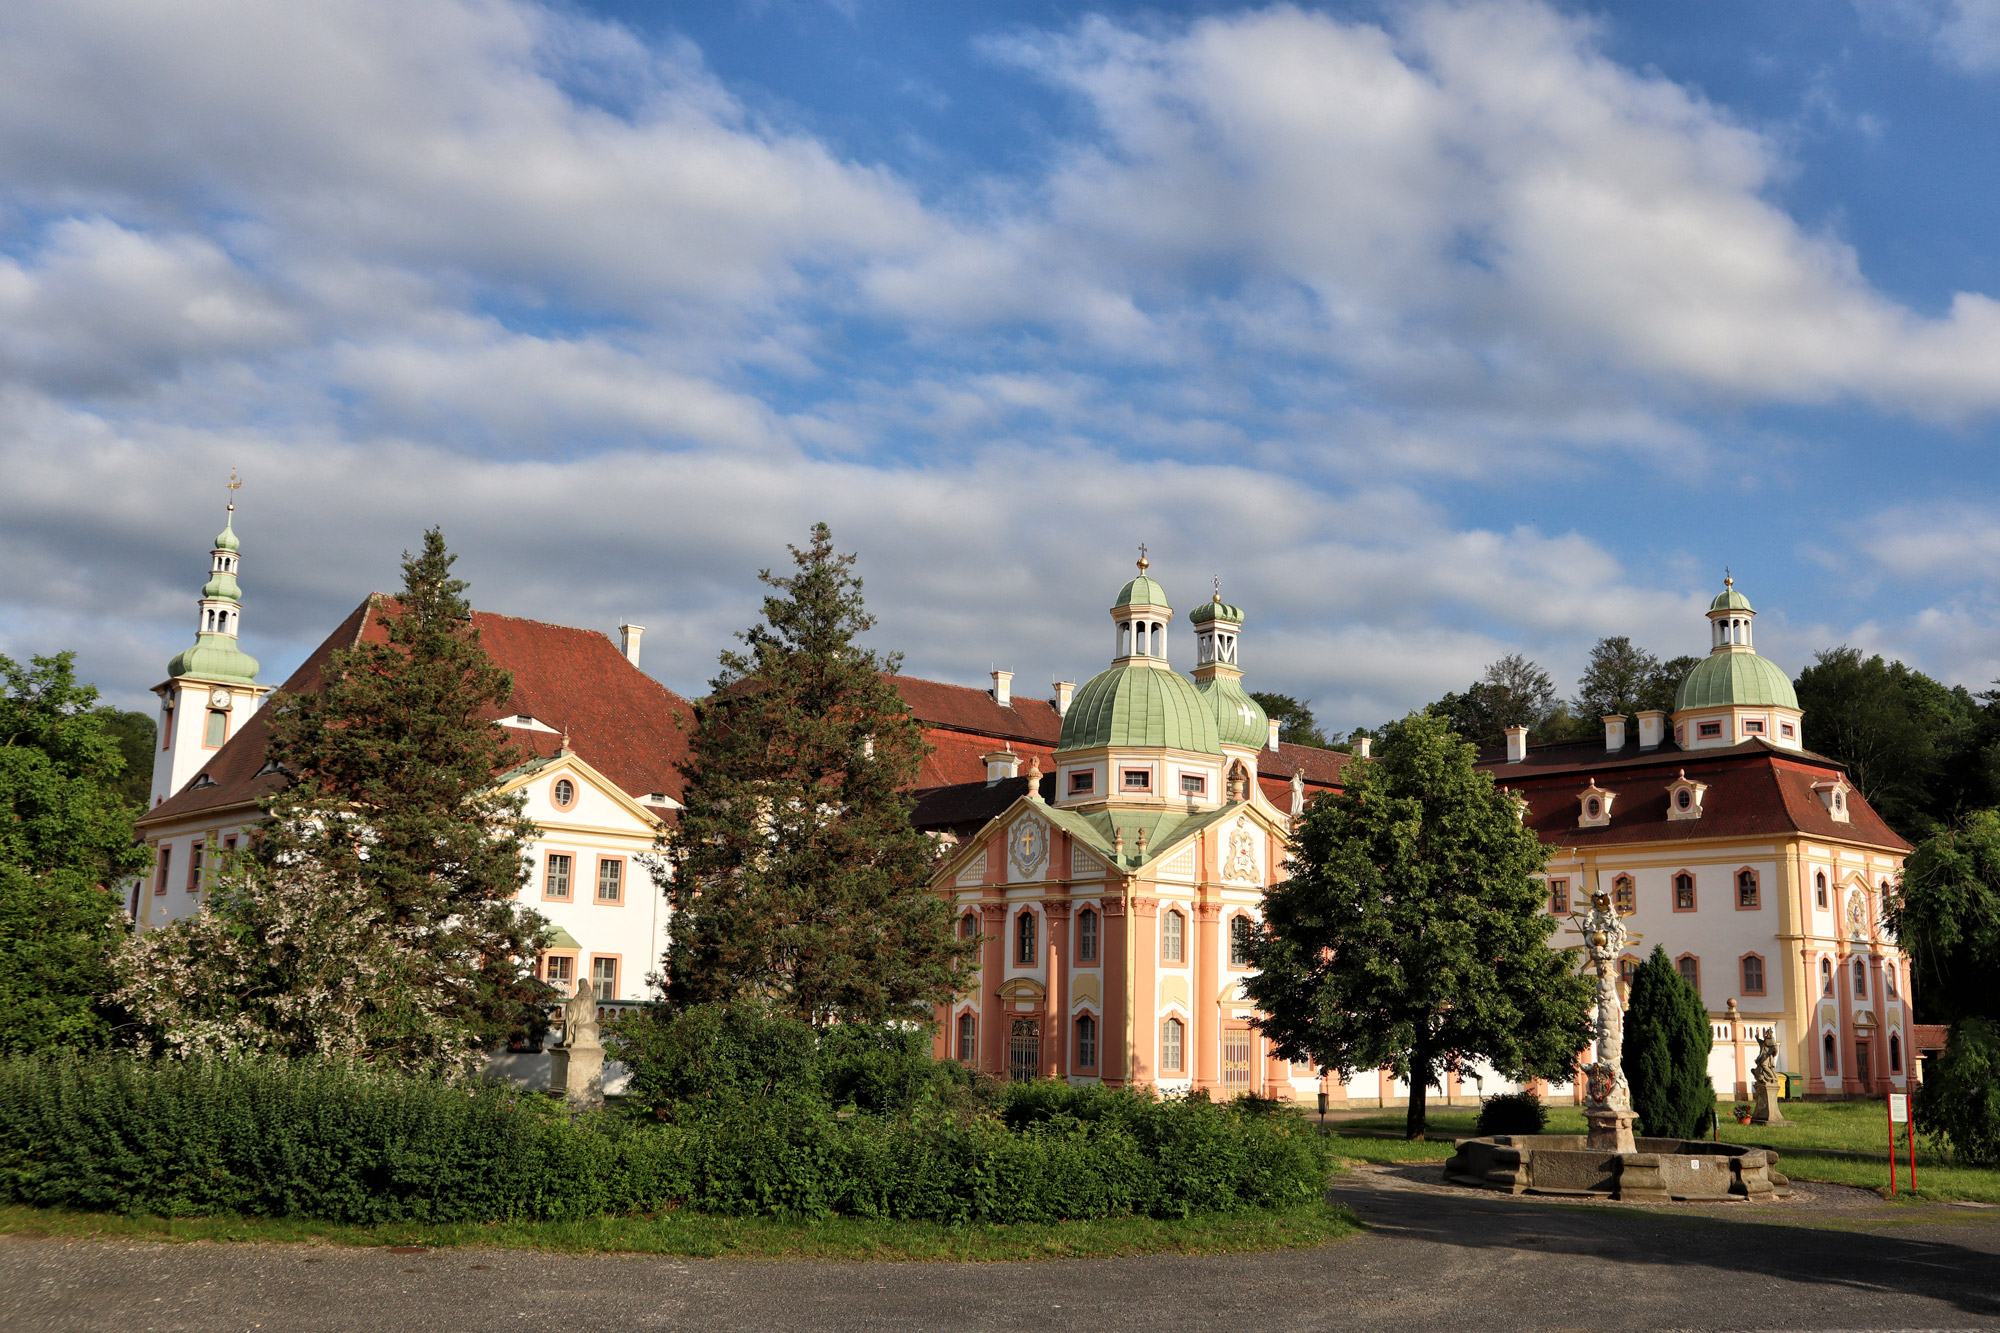 Kloster St. Marienthal, overnachten in een klooster